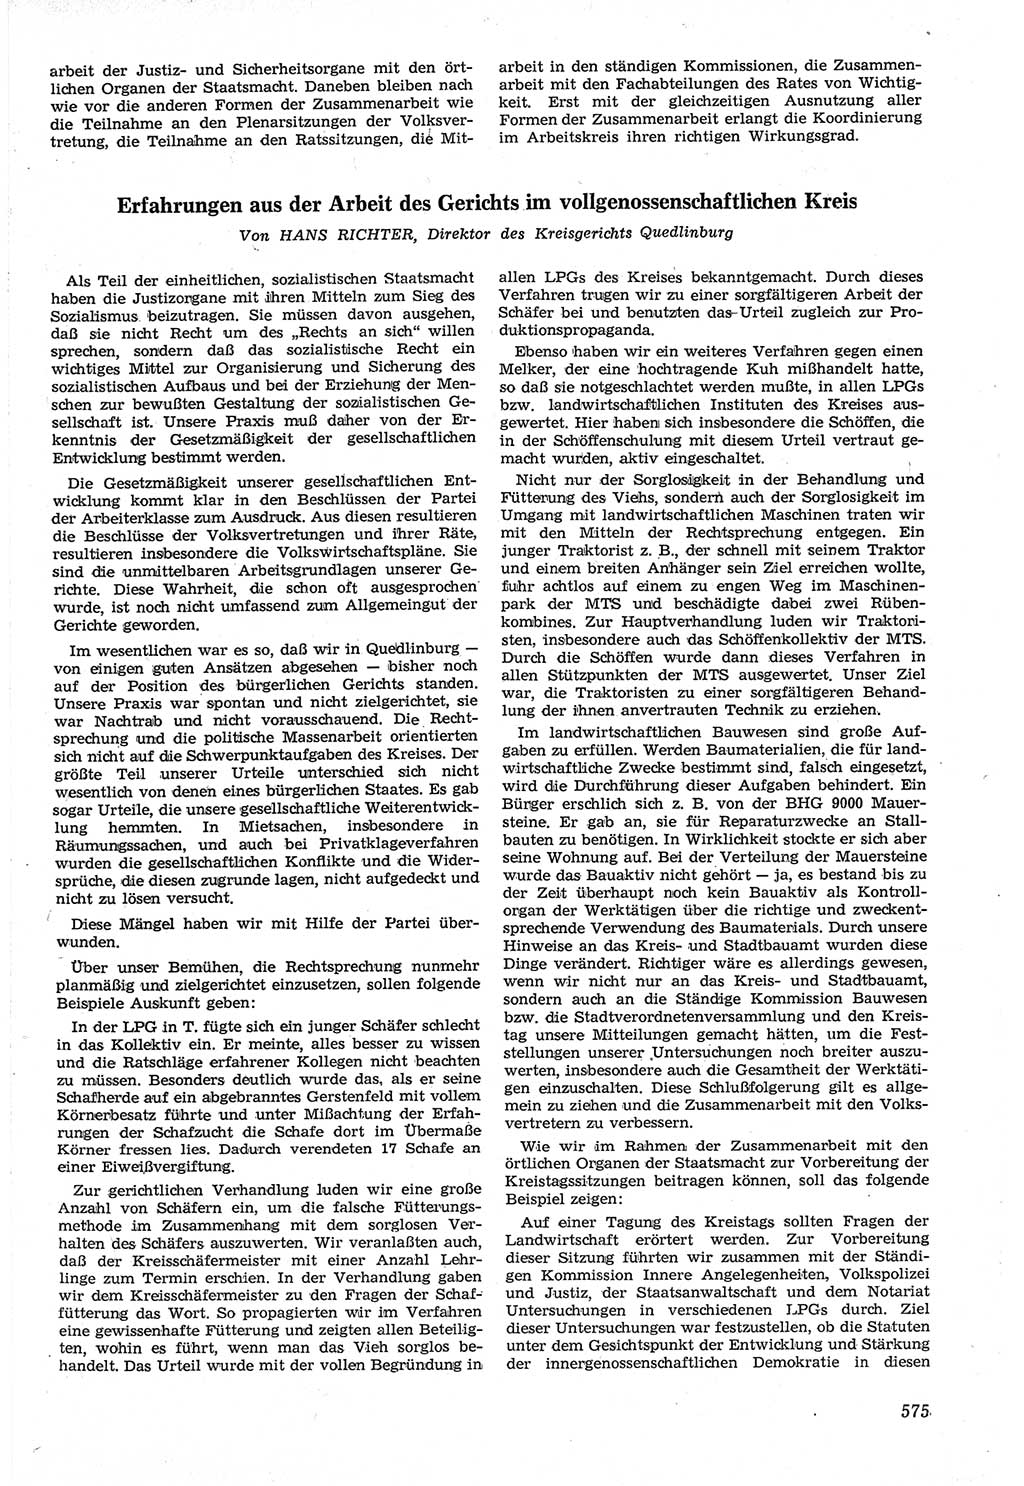 Neue Justiz (NJ), Zeitschrift für Recht und Rechtswissenschaft [Deutsche Demokratische Republik (DDR)], 14. Jahrgang 1960, Seite 575 (NJ DDR 1960, S. 575)